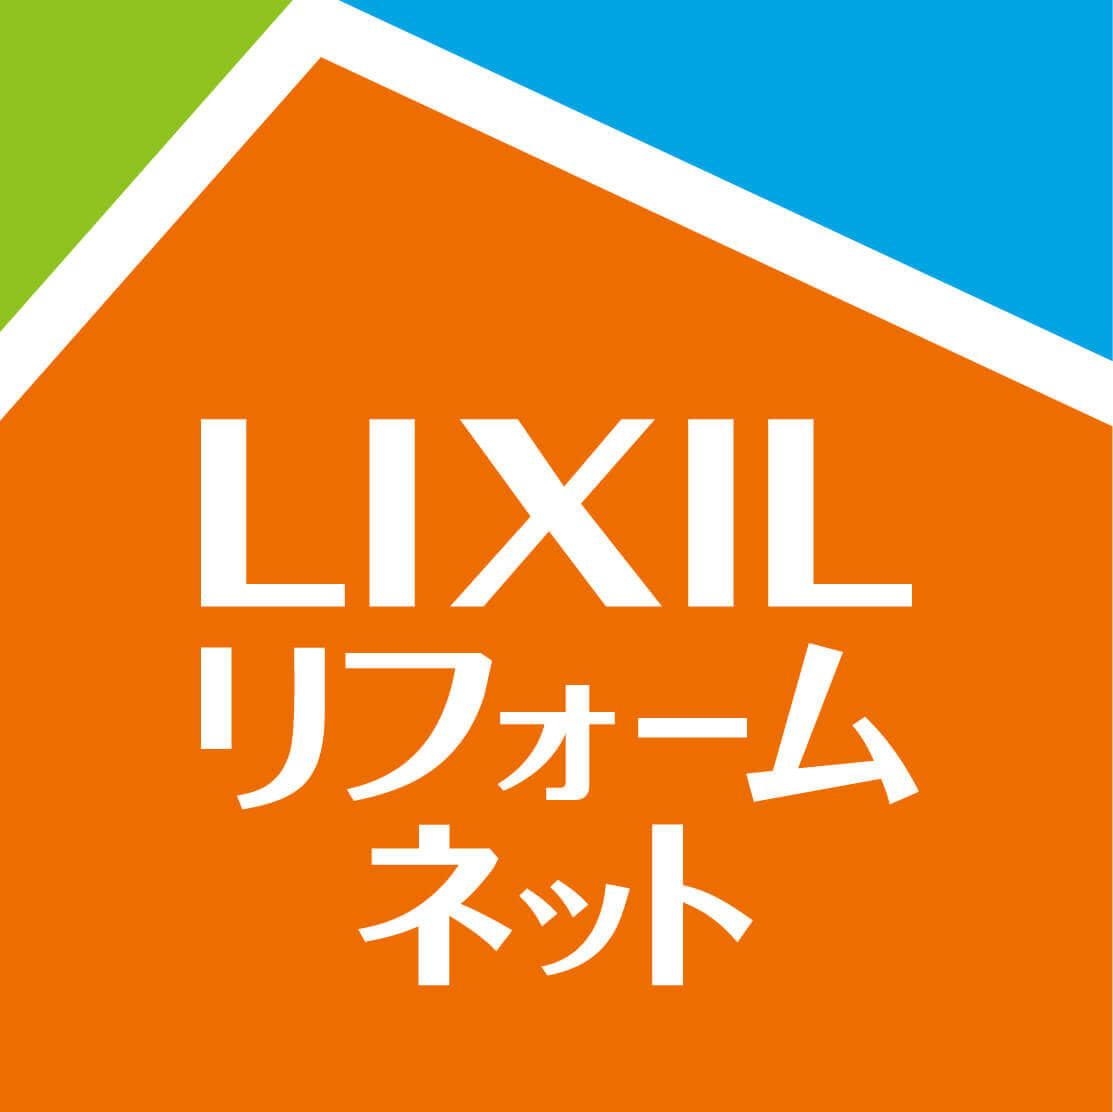 LIXILのロゴ